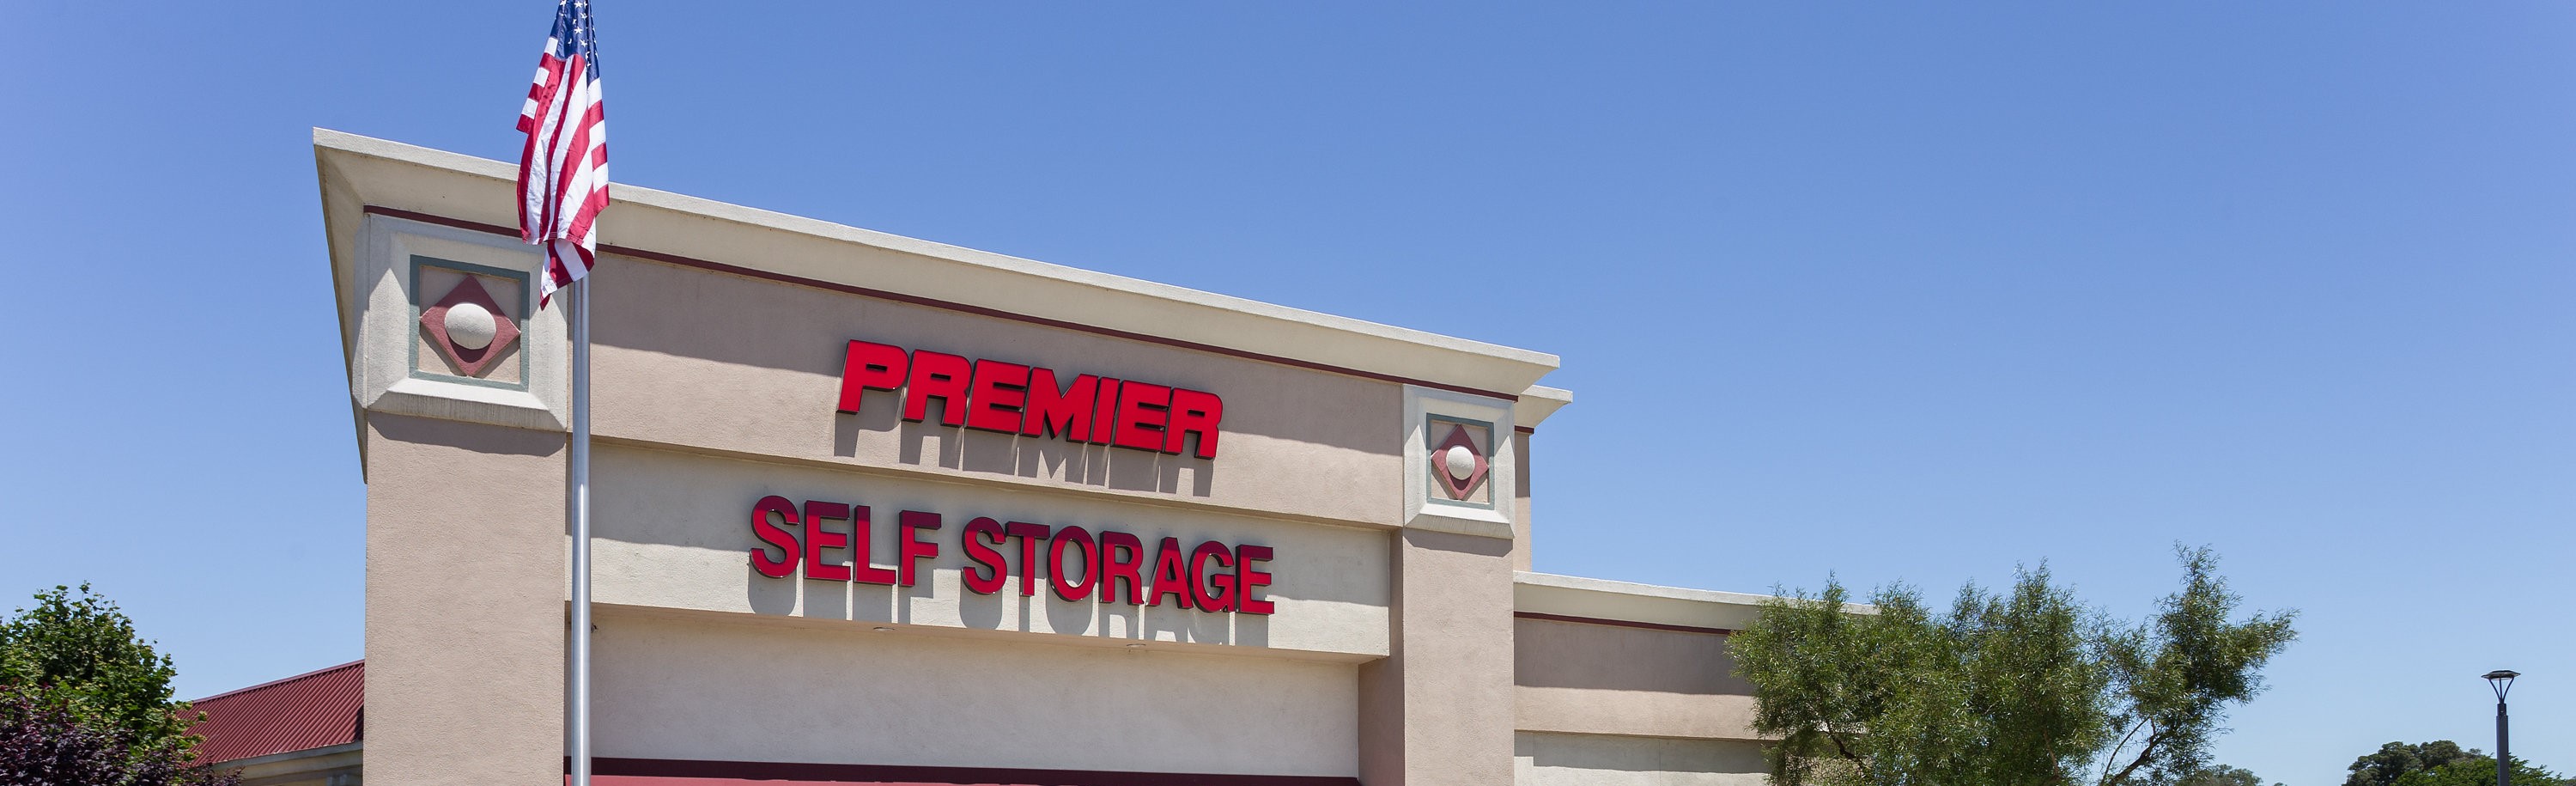 Premier Self Storage in Oakley, CA